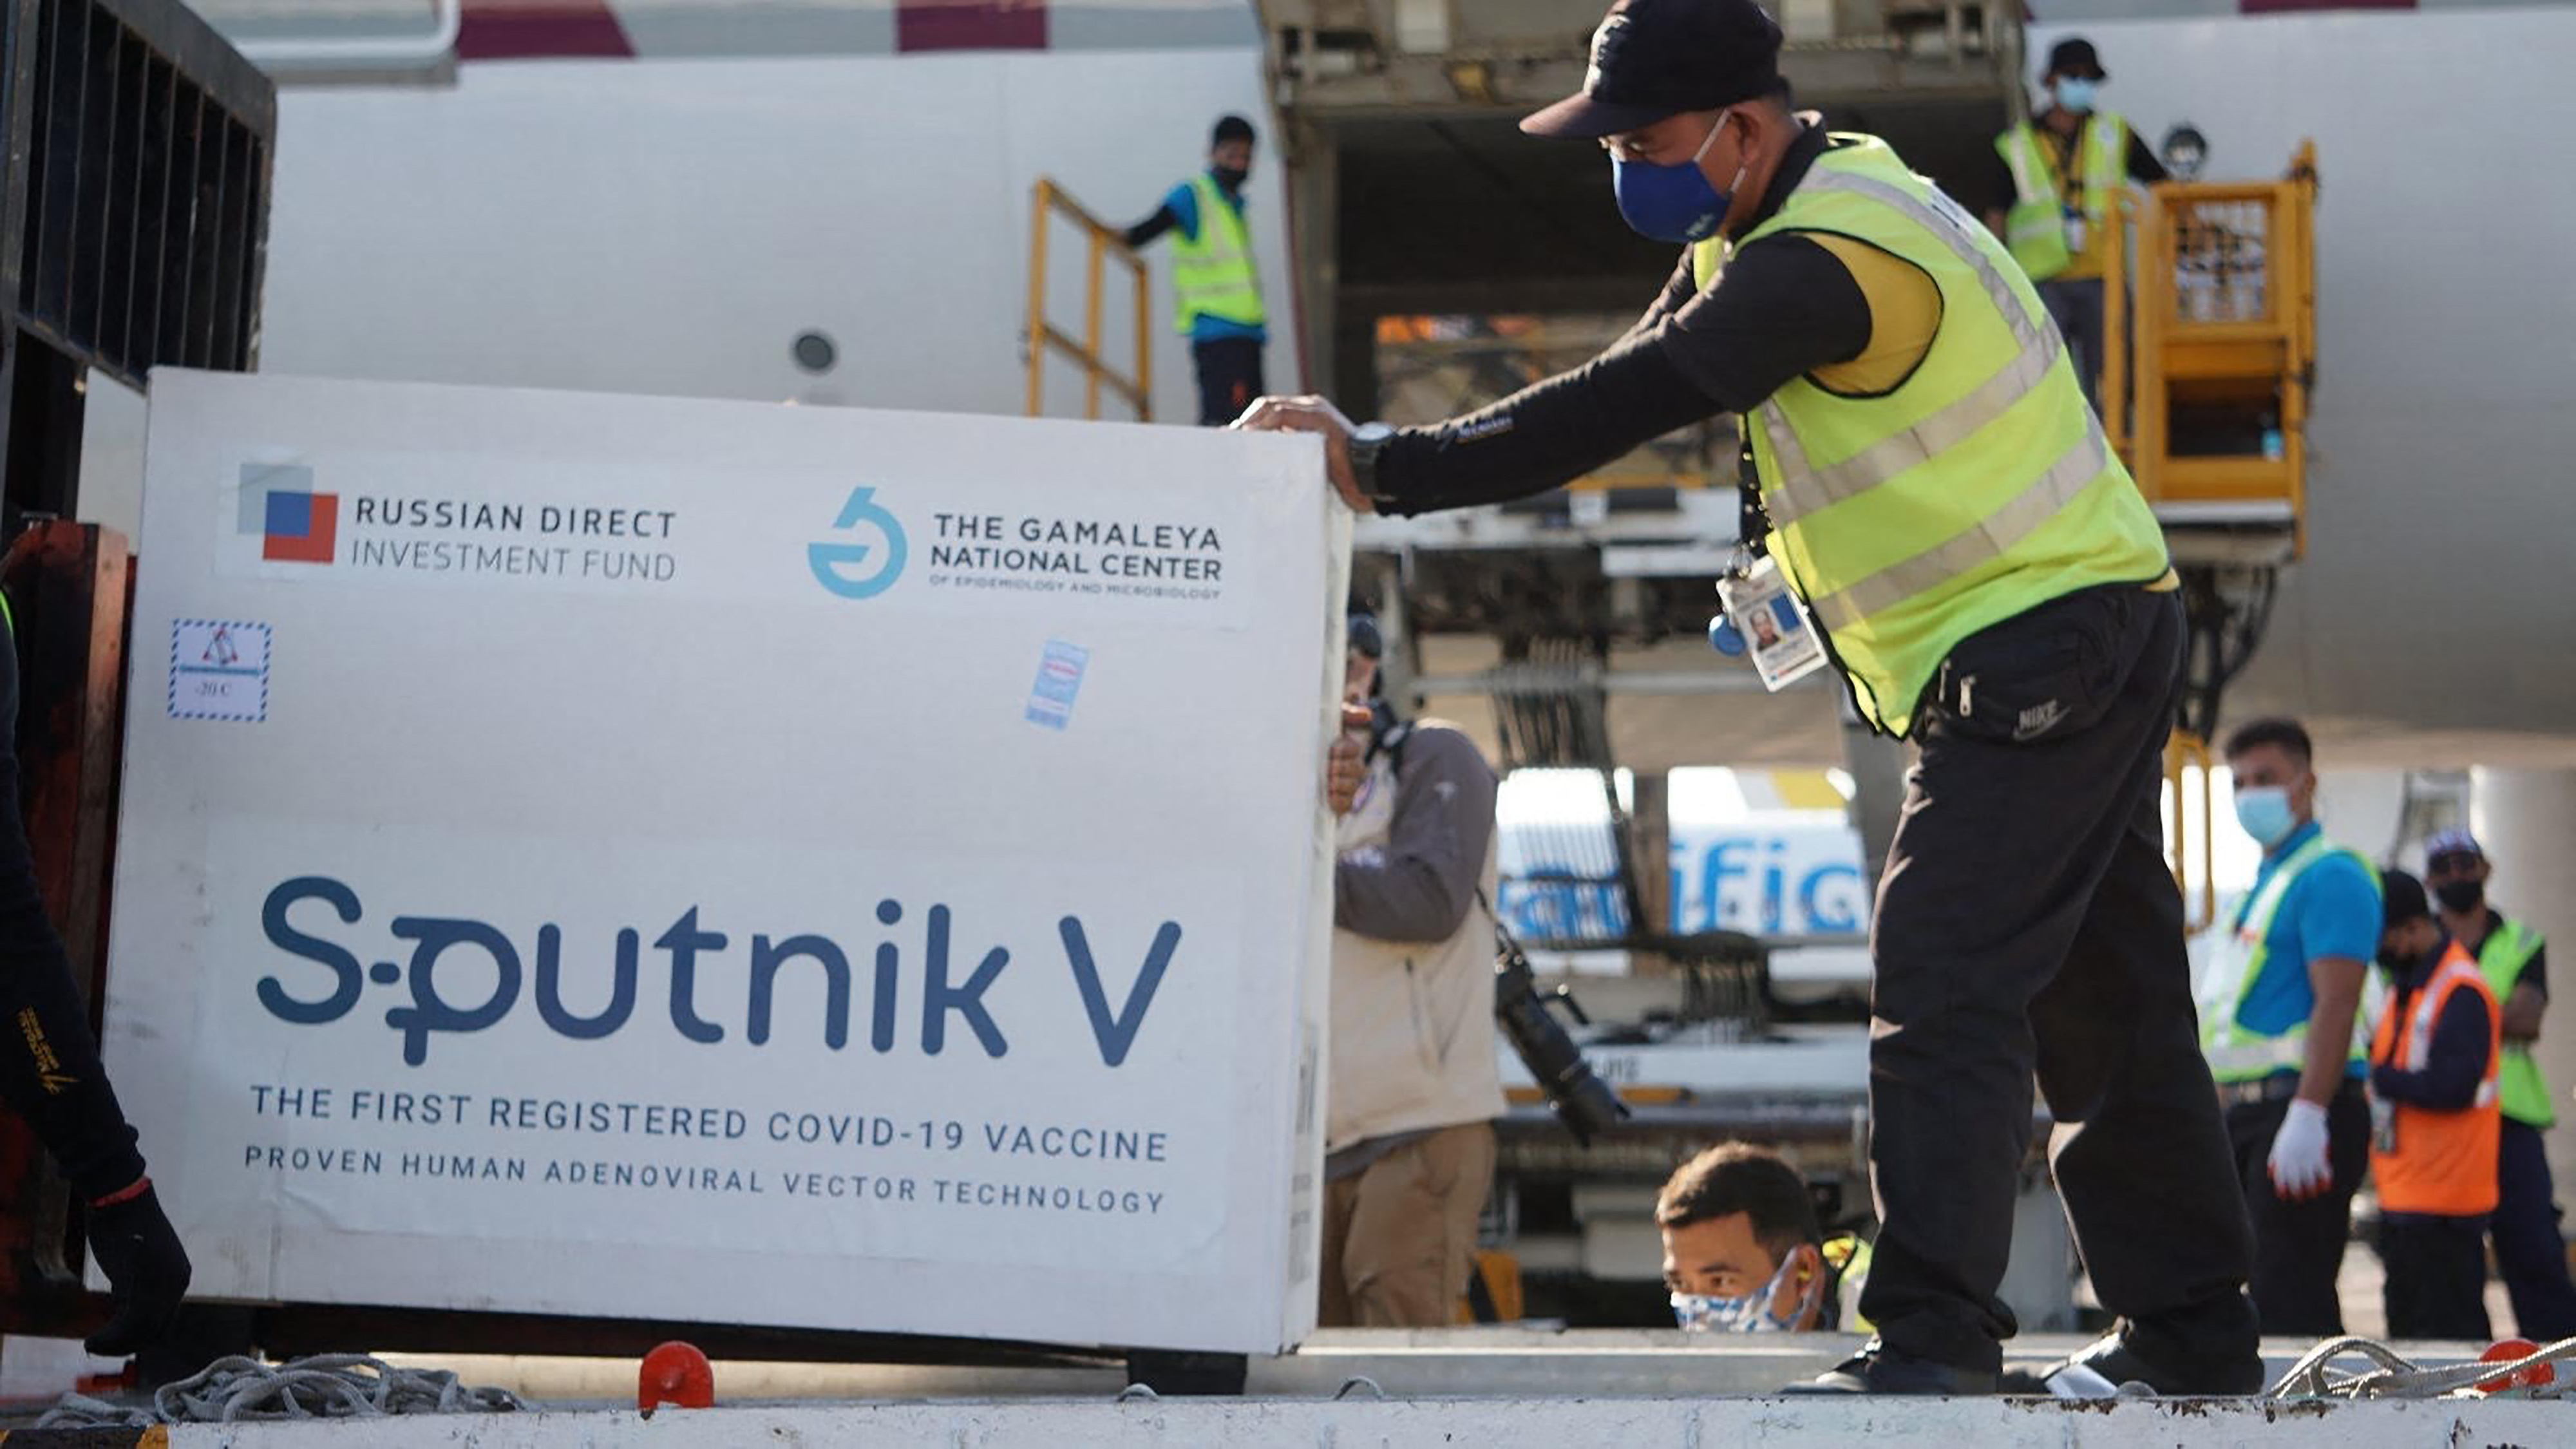 La ministra de Salud había anunciado el ingreso de la vacuna rusa contra el covid - 19 para este fin de semana en Guatemala, pero ahora se desconoce la nueva fecha de ingreso. Fotografía: AFP. 